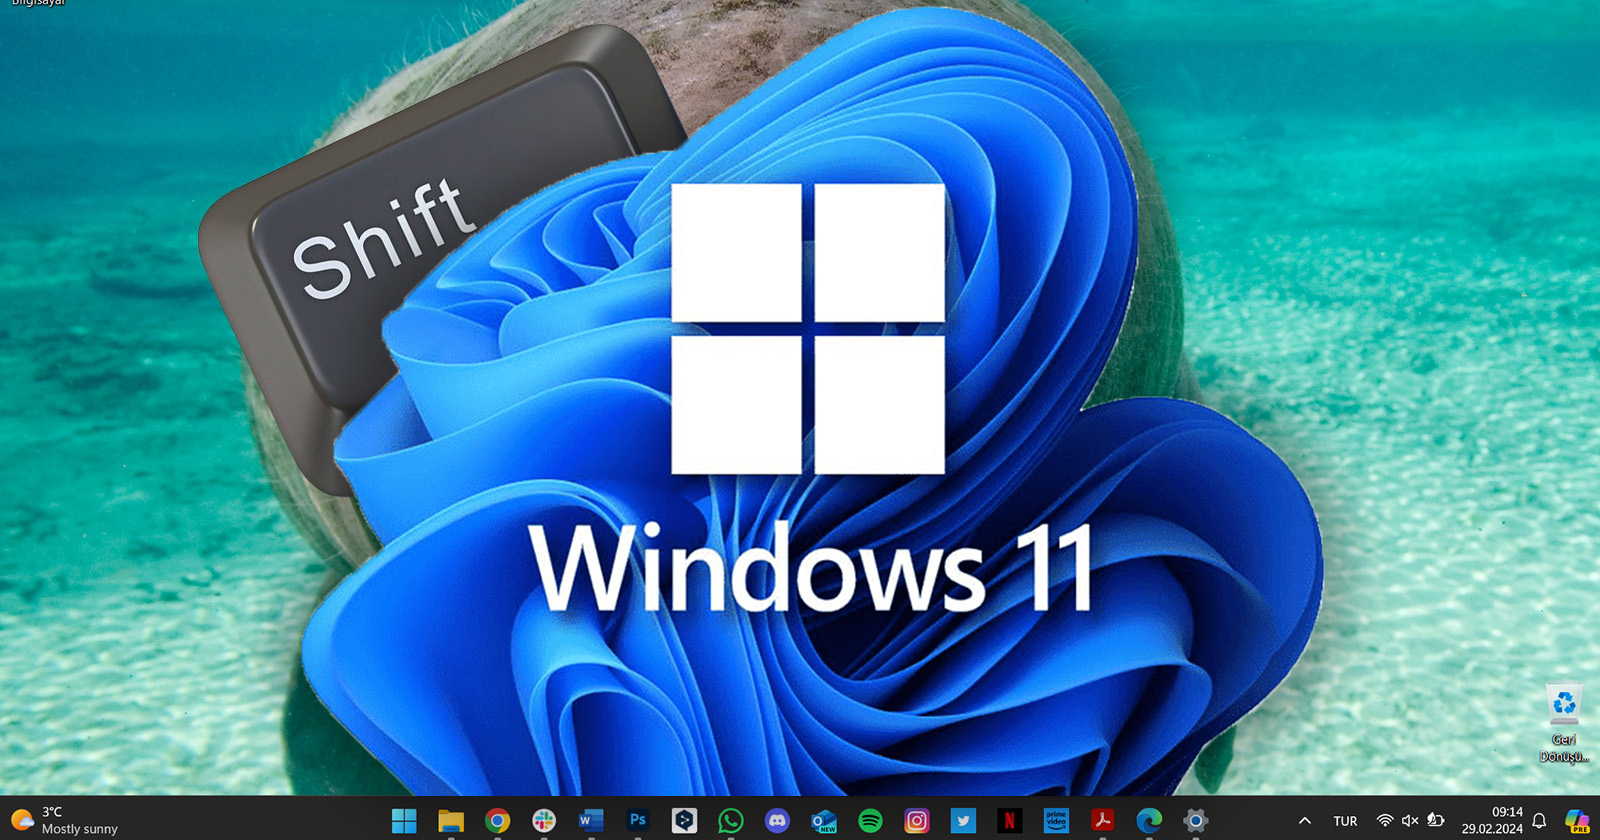 How to turn off Windows 11 sticky keys?